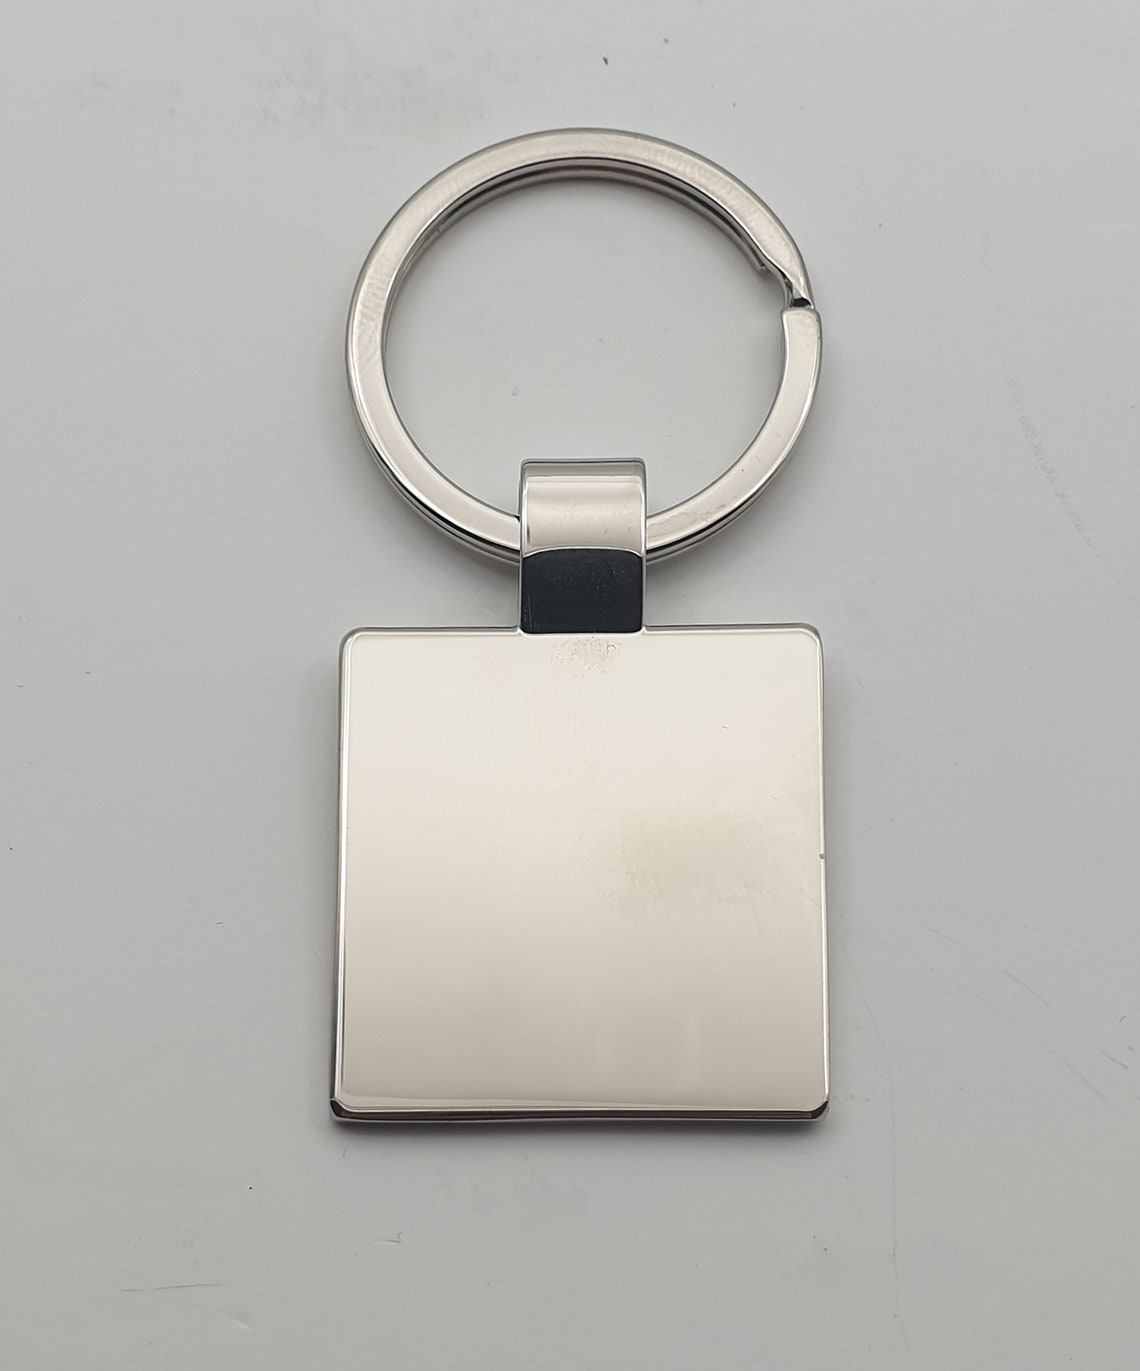 Square Chrome Keyring Plain Design Heavy duty Ring Gift | Etsy